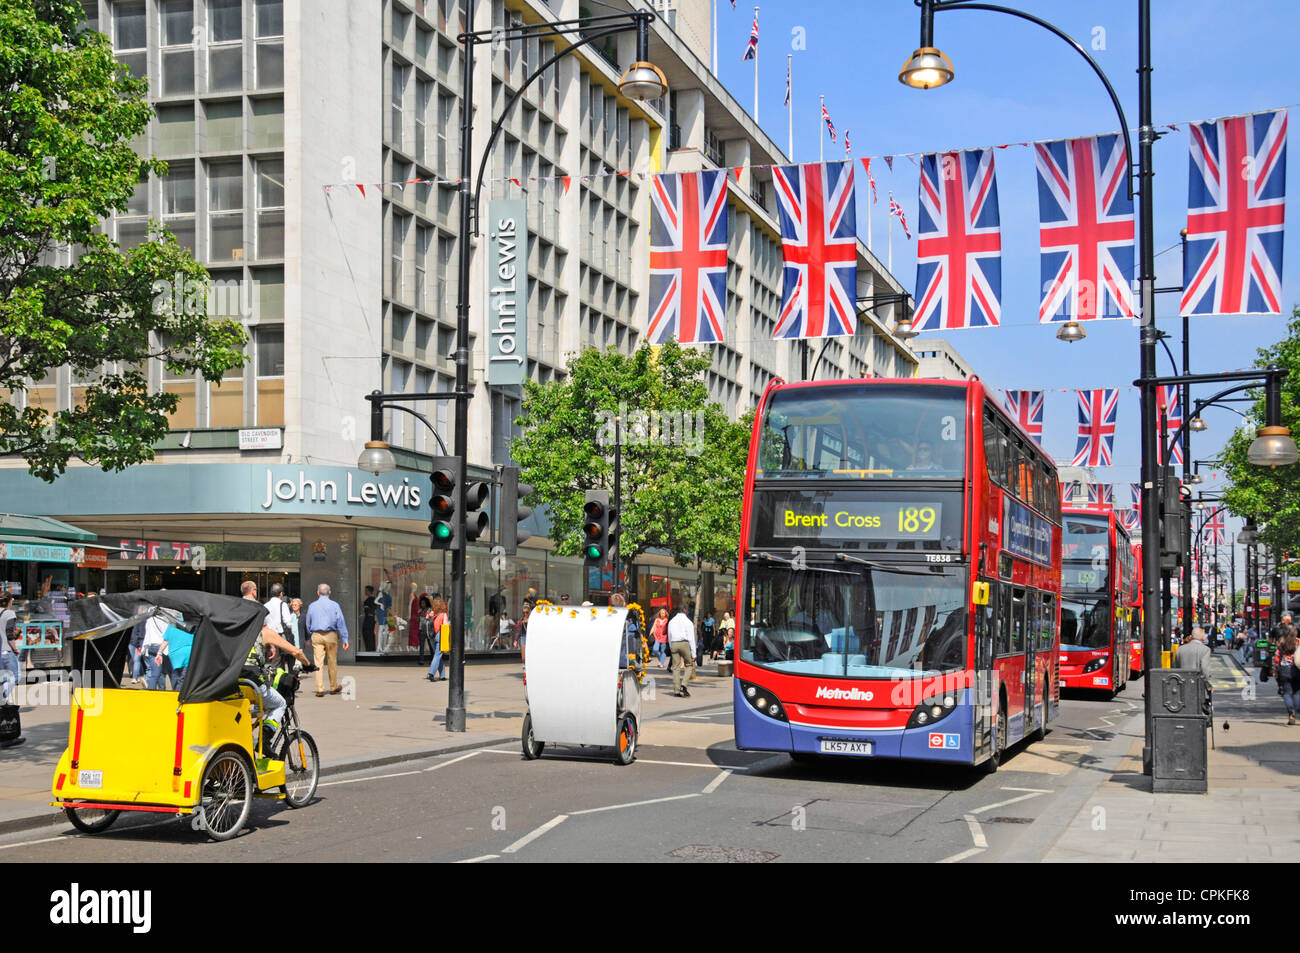 Rickshaws et bus rouges à l'extérieur du grand magasin John Lewis Oxford Street Union Jack flags Queens Diamond Jubilee & 2012 Olympic Jeux Londres Angleterre Royaume-Uni Banque D'Images